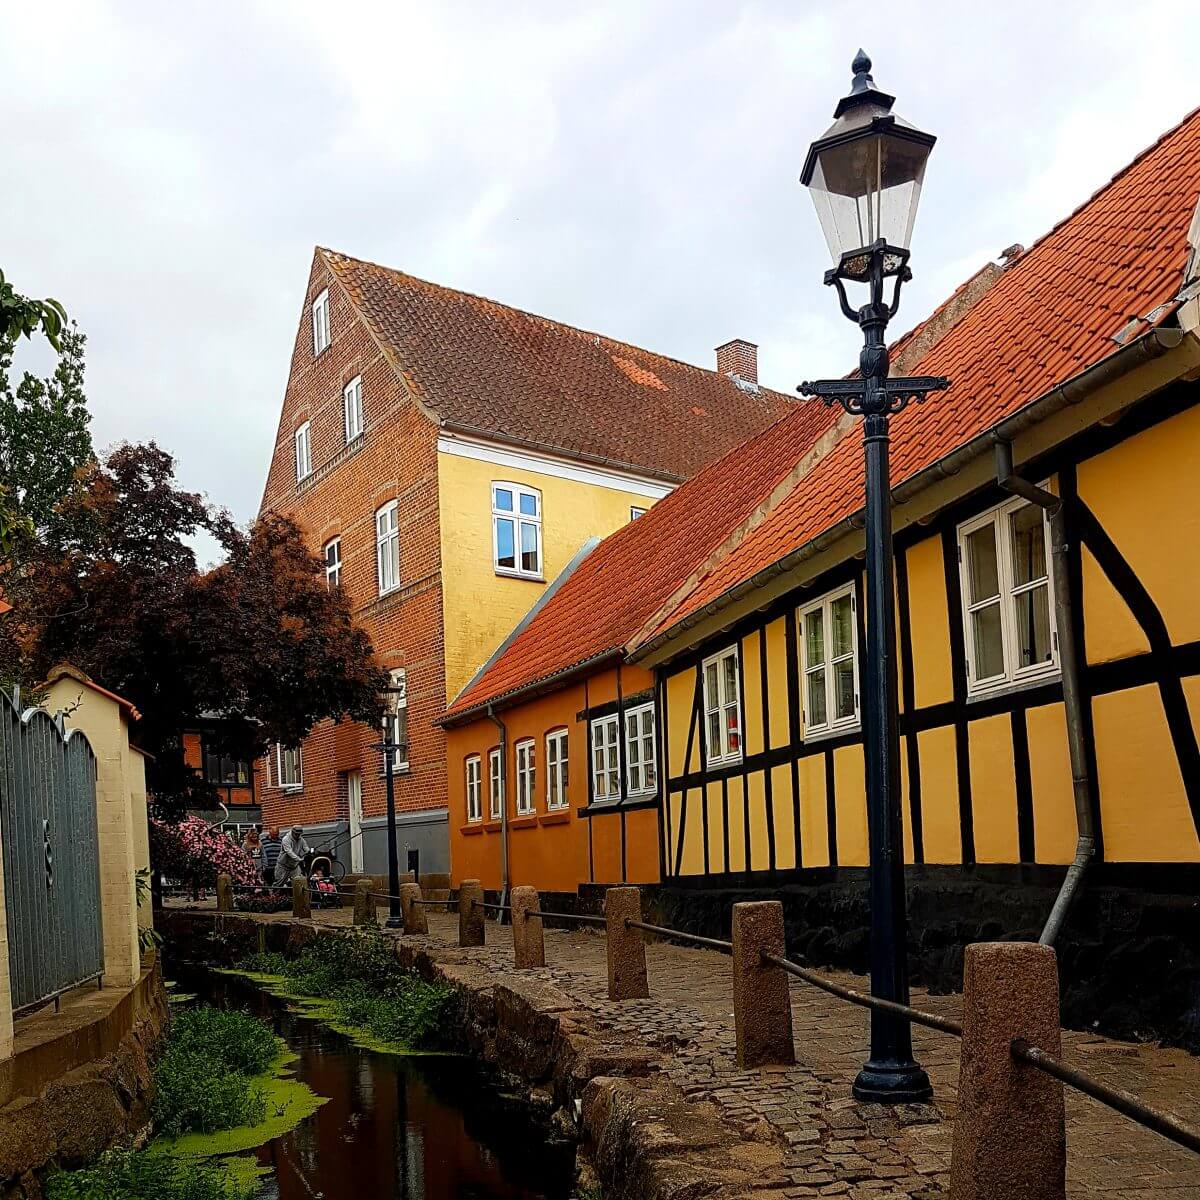 Vakantie met kids: sprookjesachtig Funen in Denemarken - de oude stad Bogense met strand en haven, oude stadsbeek naast Cafe Solo